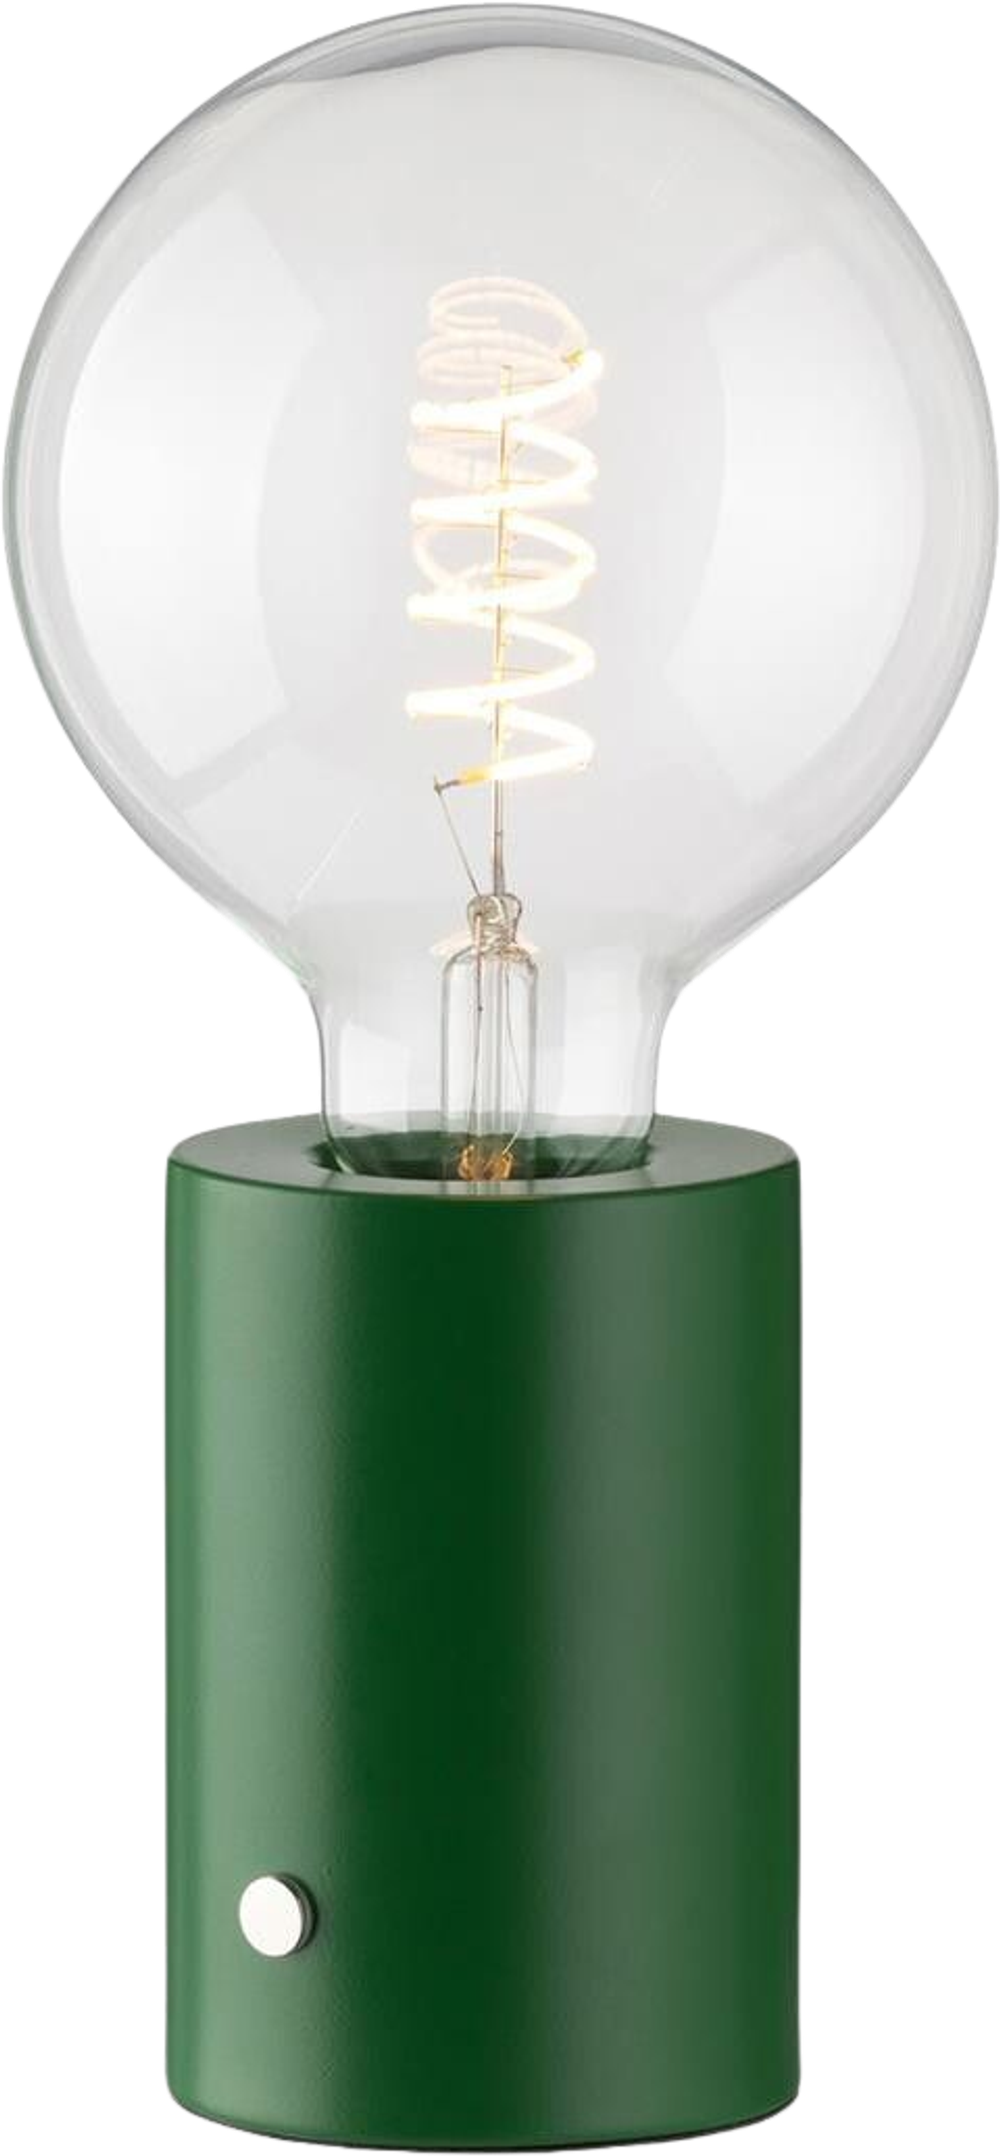 Tilbud på Touch bordlampe inkl. pære (GRØN ONESIZE) (SINNERUP) fra Sinnerup til 299,95 kr.